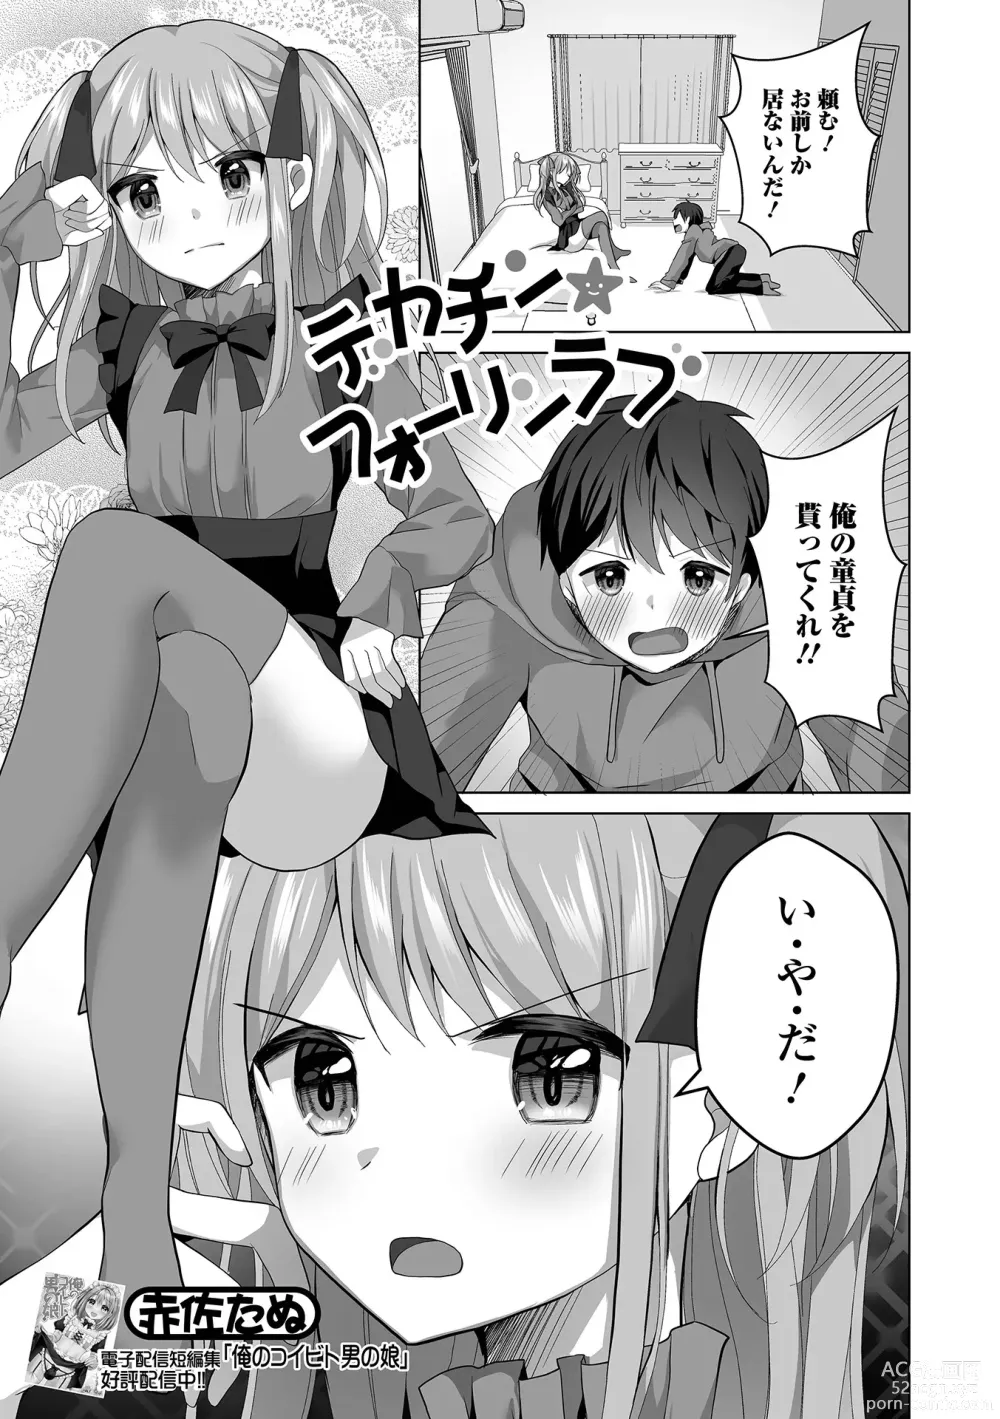 Page 21 of manga Gekkan Web Otoko no Ko-llection! S Vol. 92